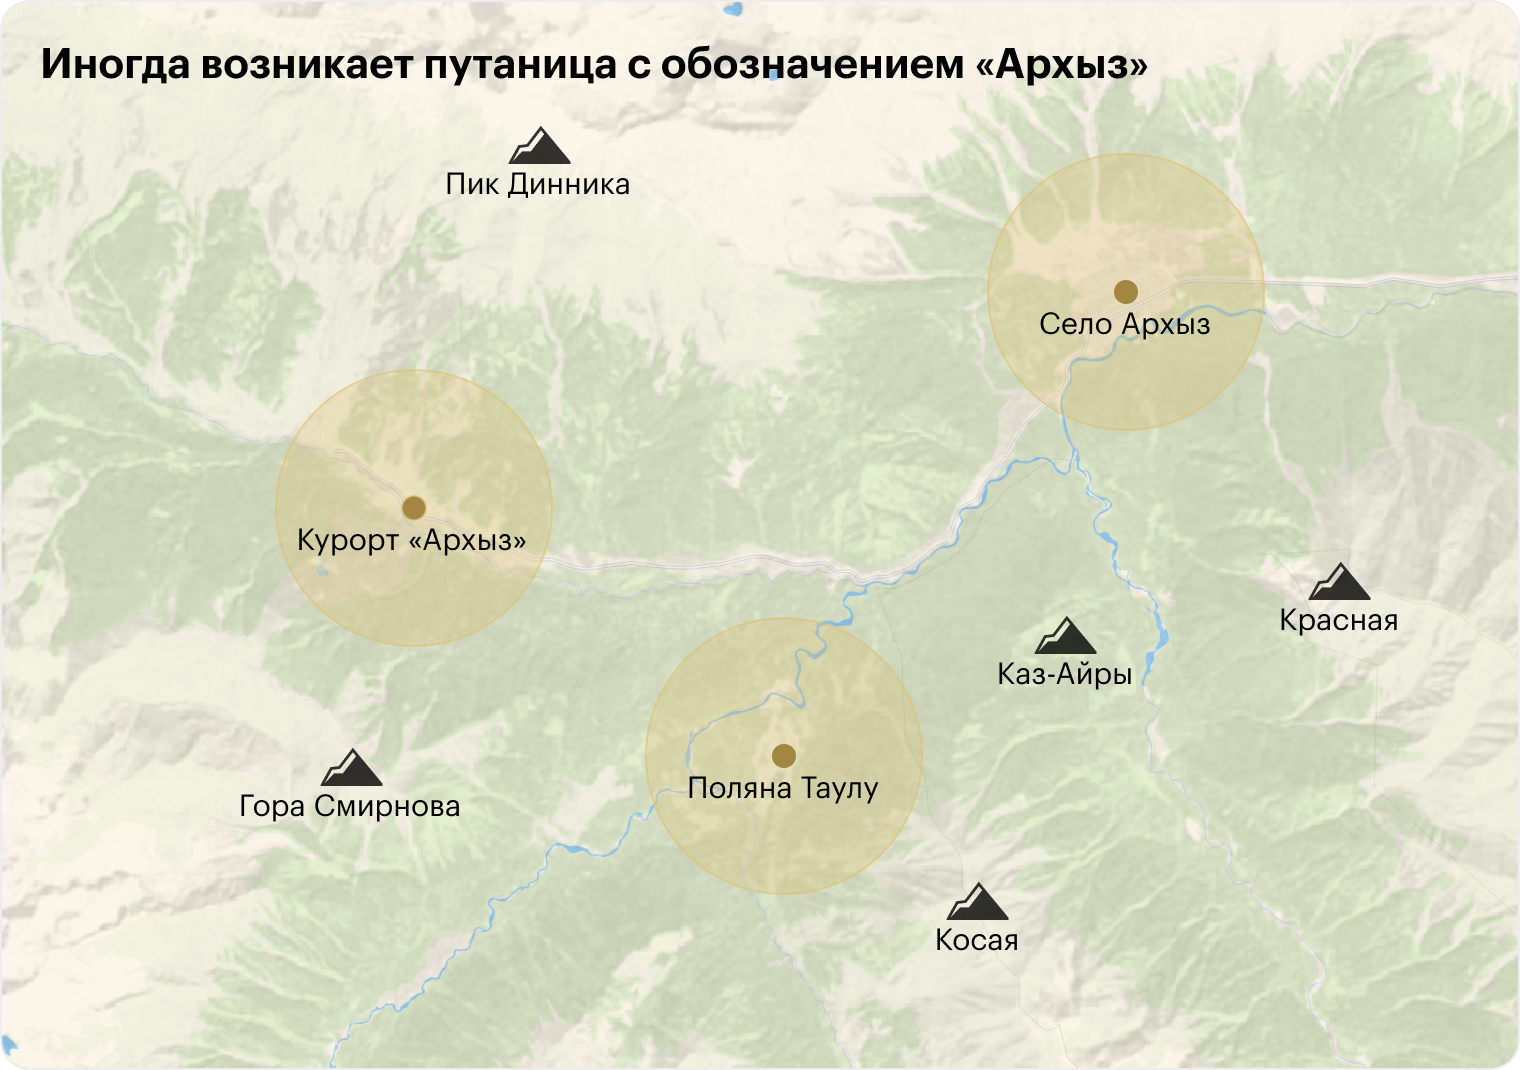 Так село Архыз, курорт «Архыз» и поляна Таулу расположены на карте относительно друг друга